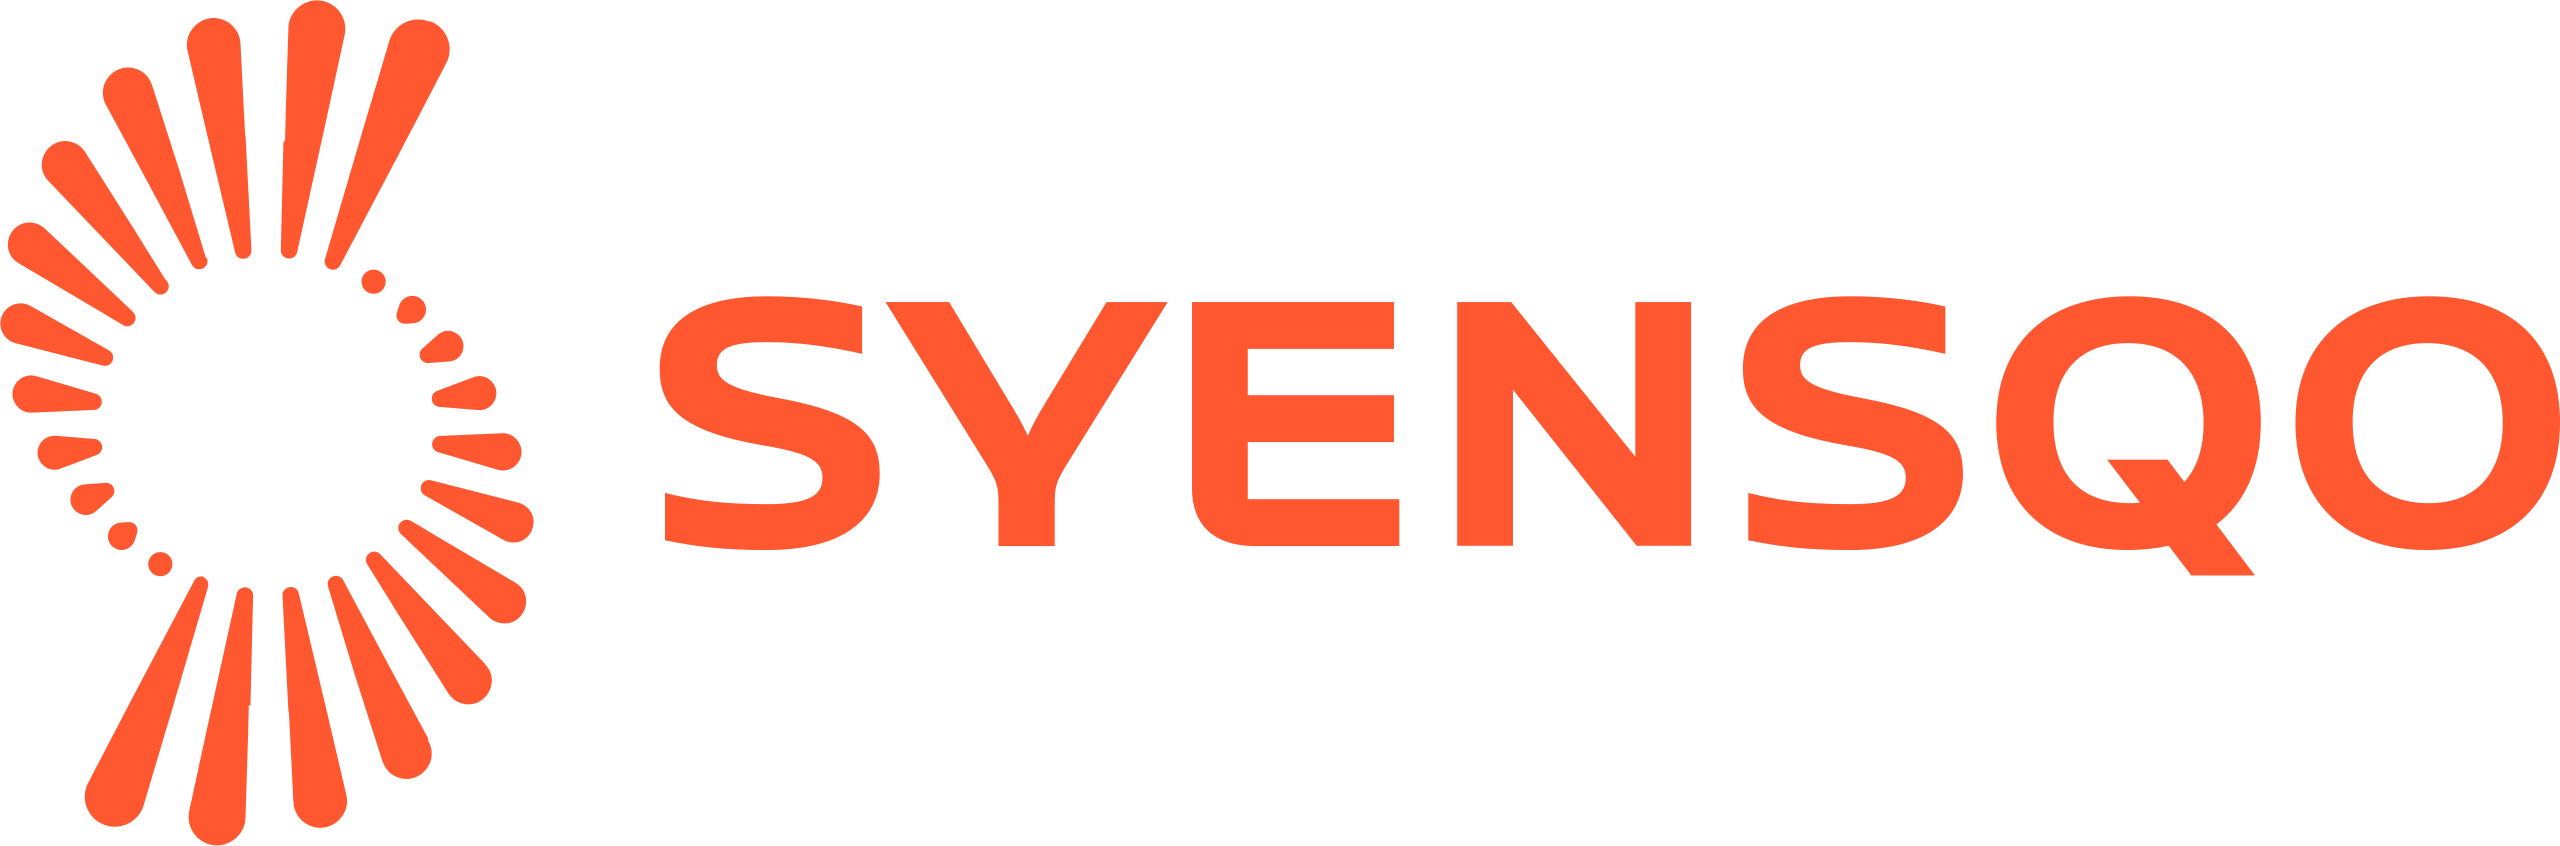 Syensqo Brand Logo